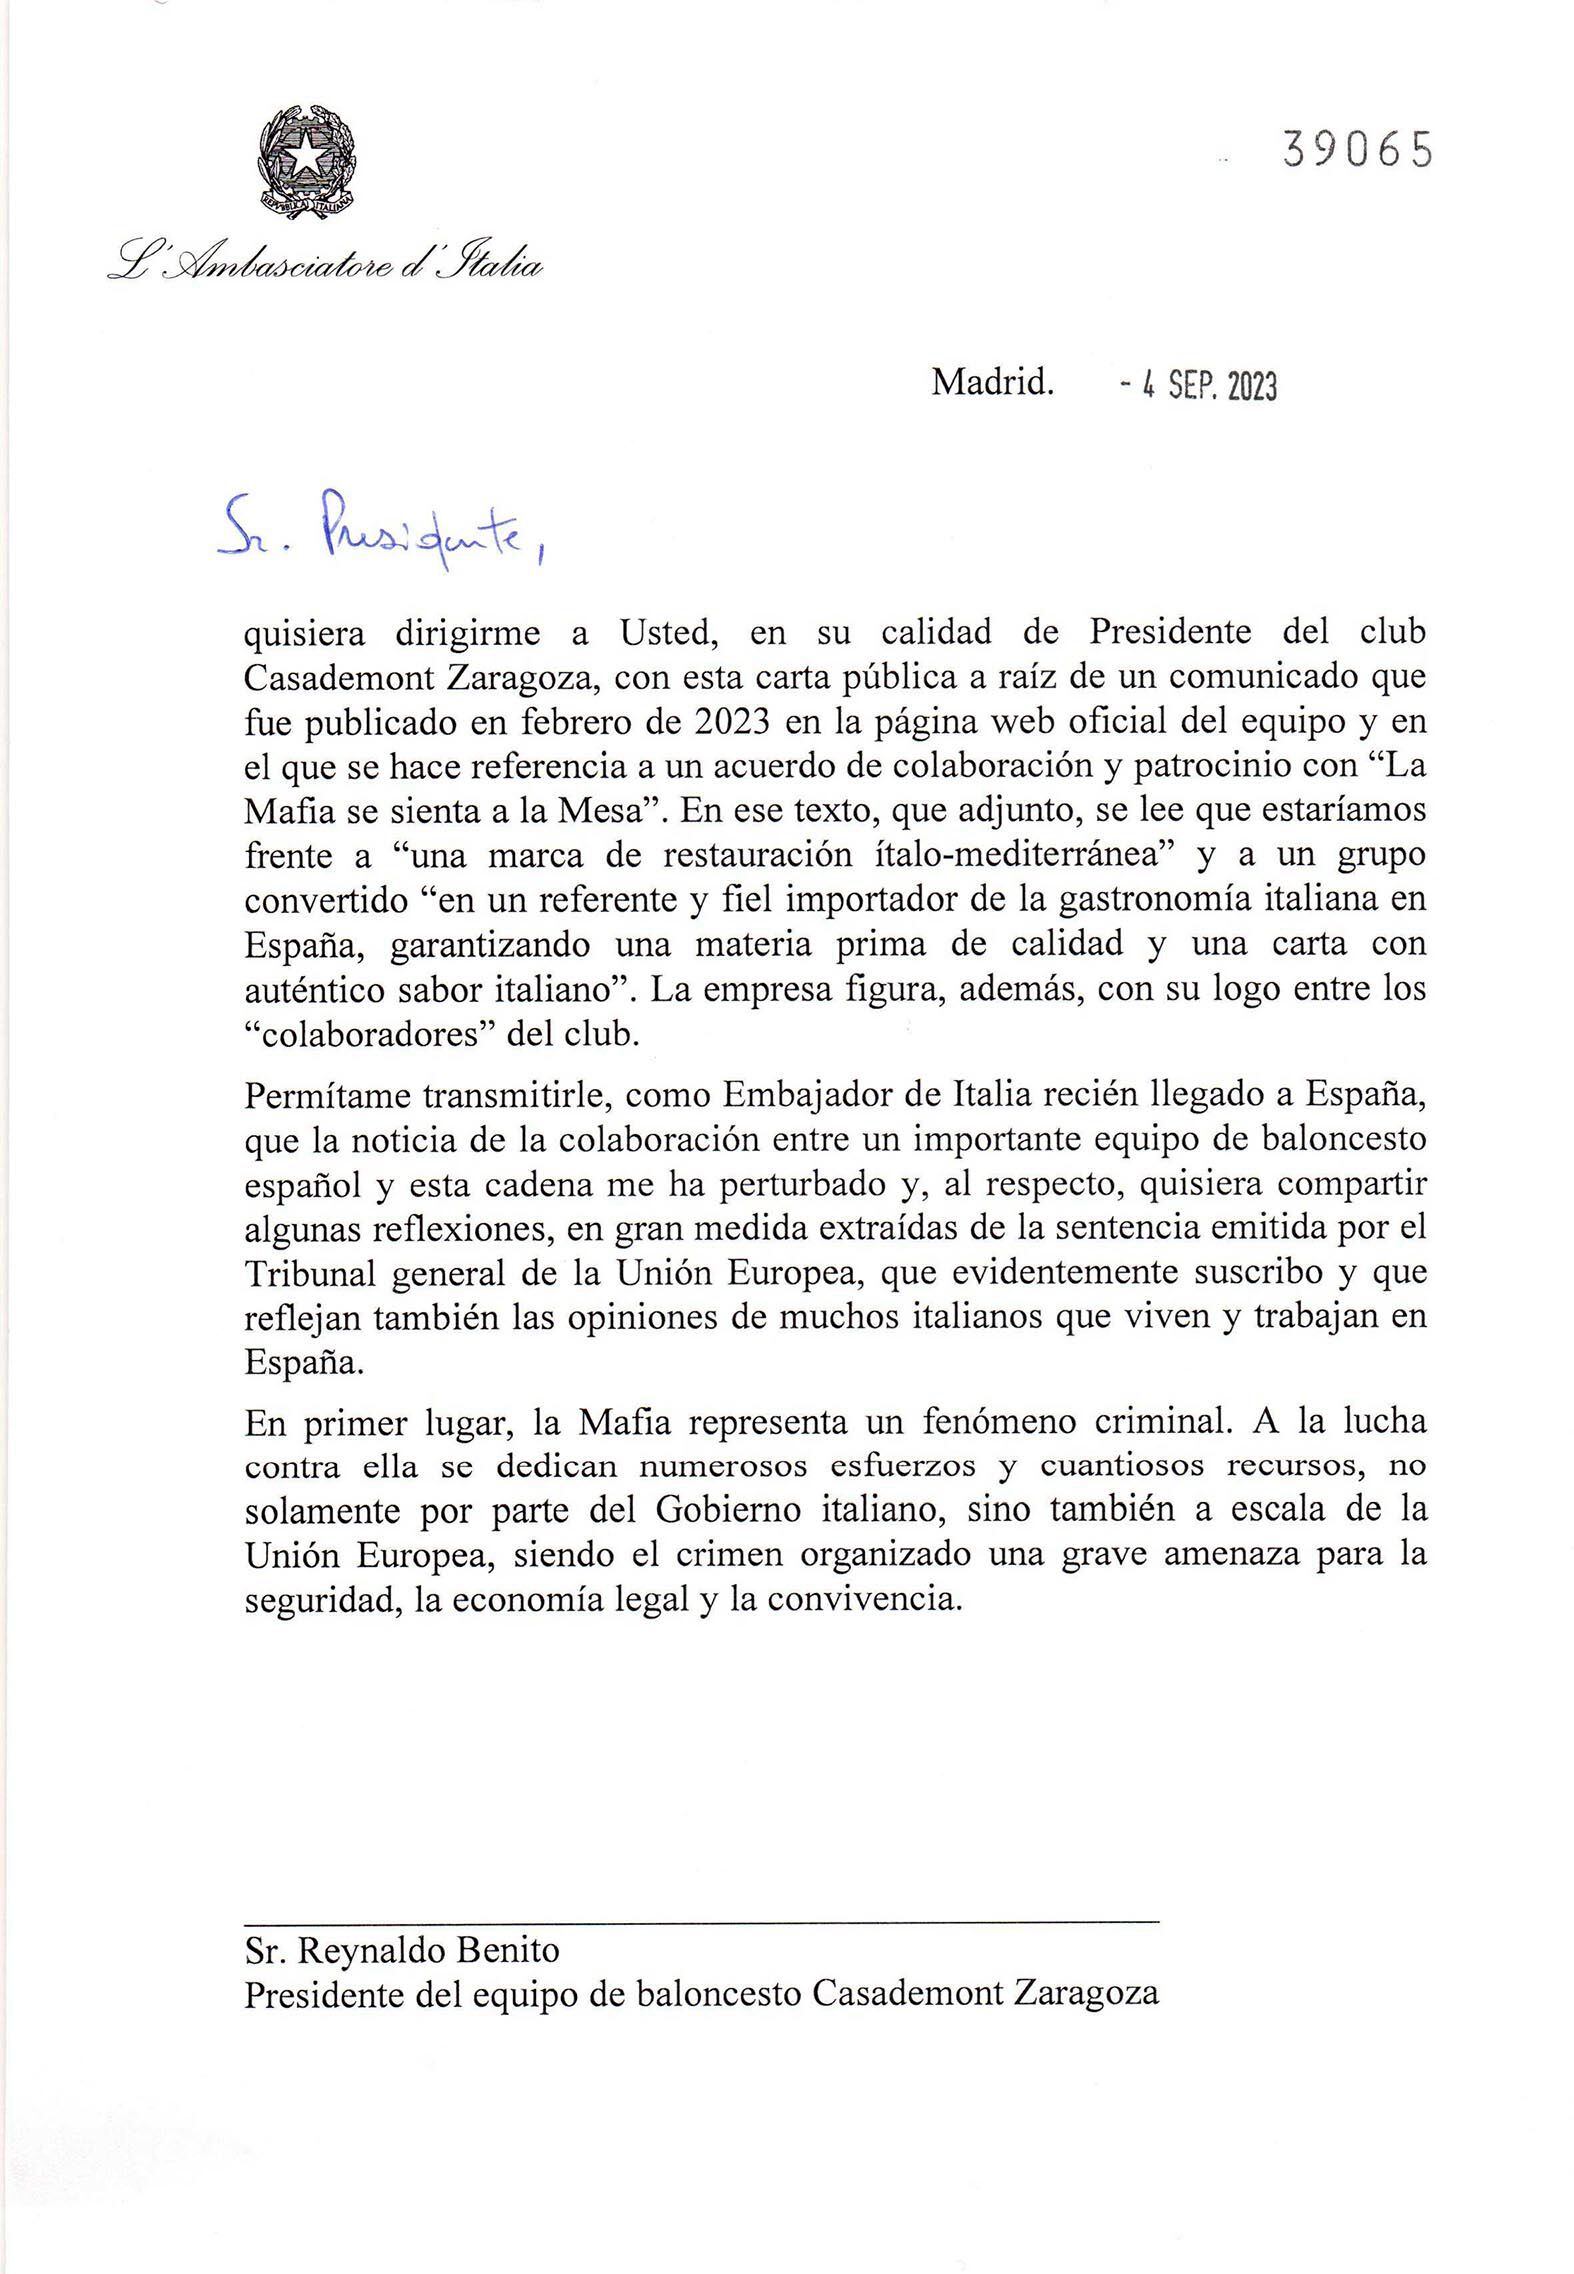 Una parte de la carta escrita por el embajador italiano. 